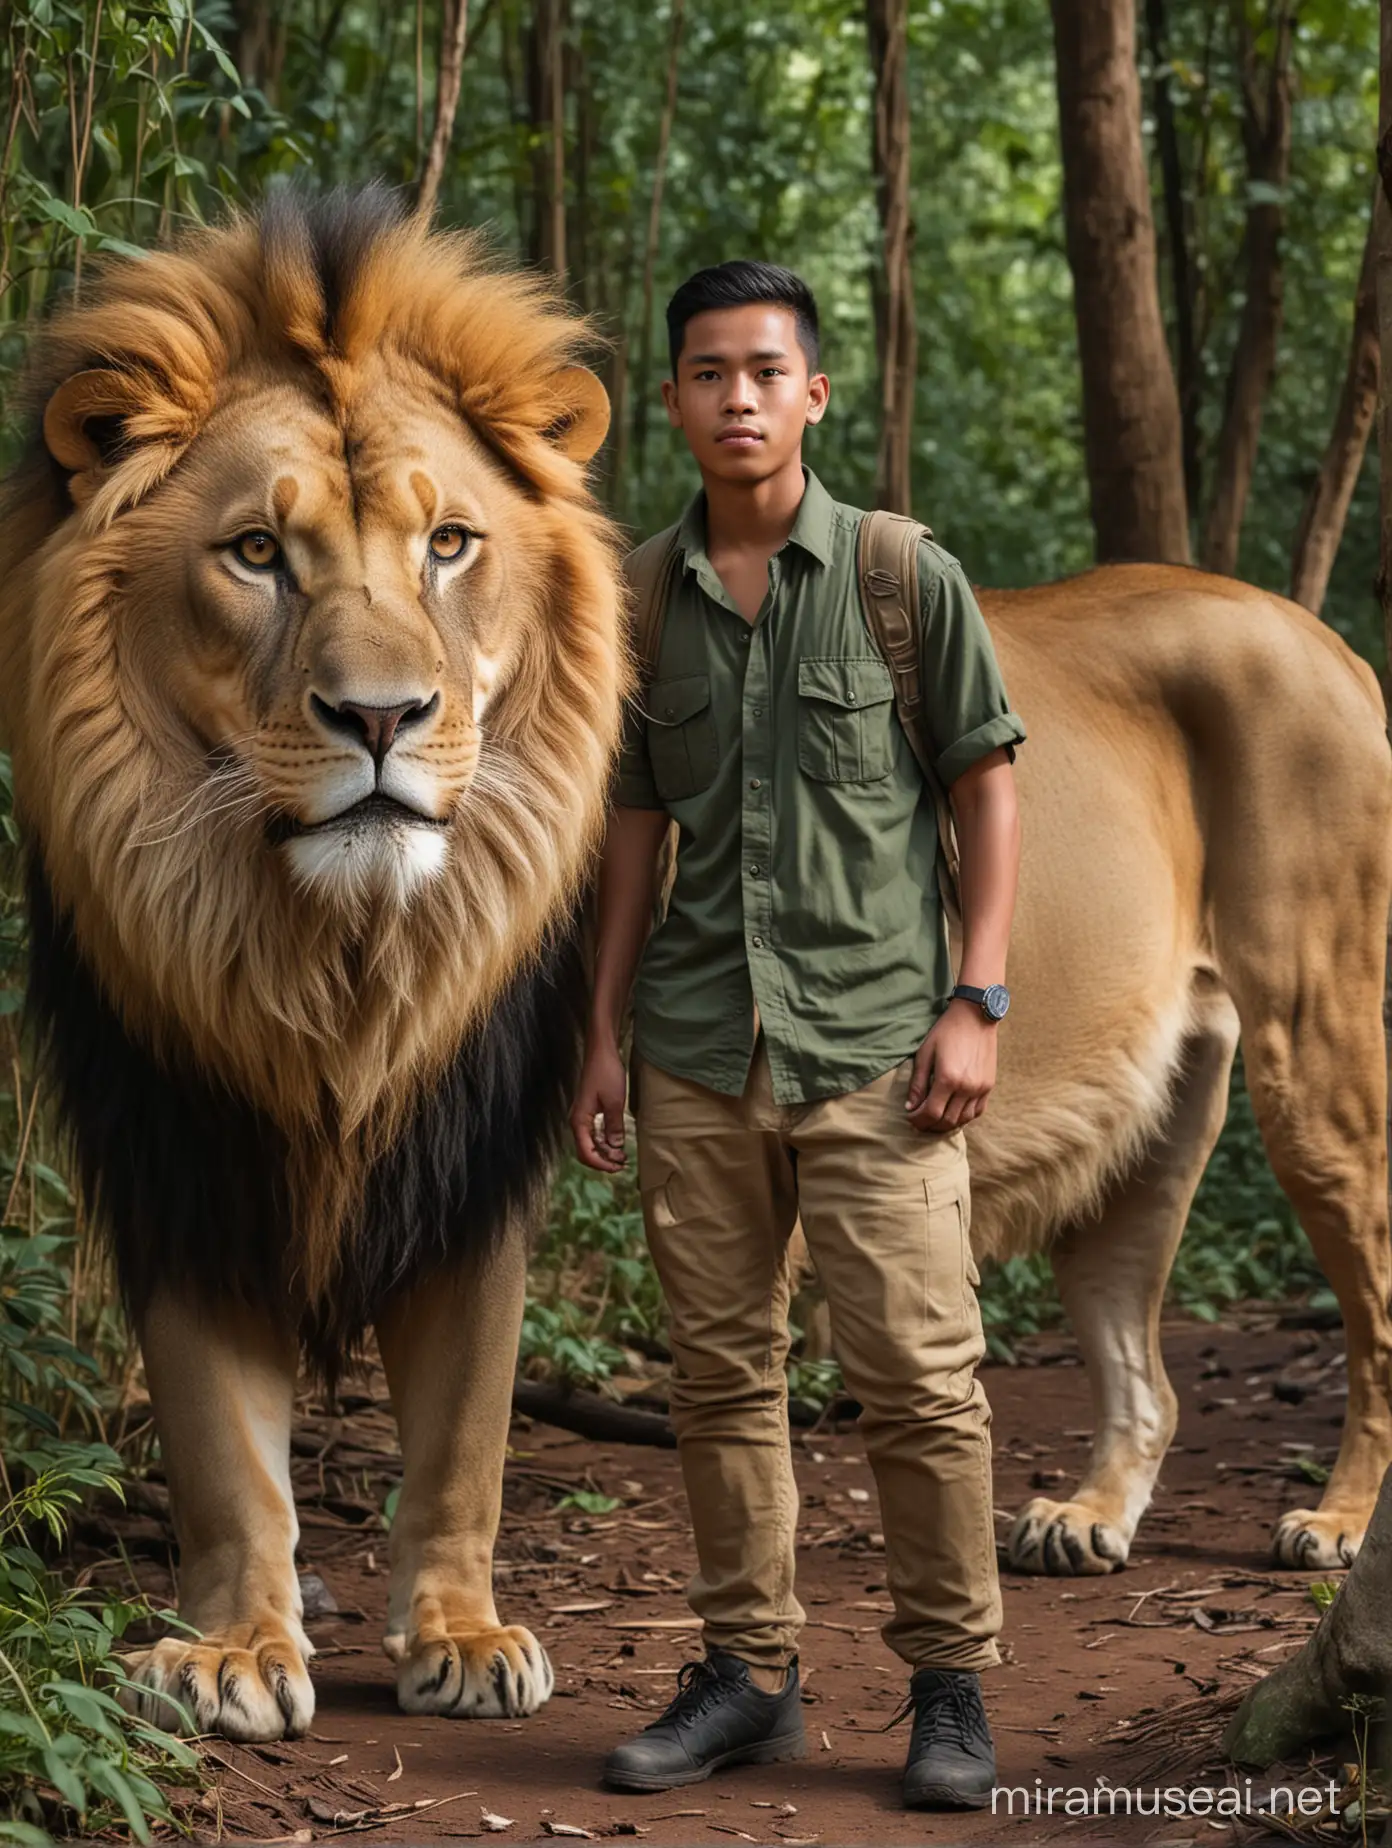 Pemuda tampan indonesia wajah tembam, sedang berpetualang di hutan, full body bersama se ekor singa